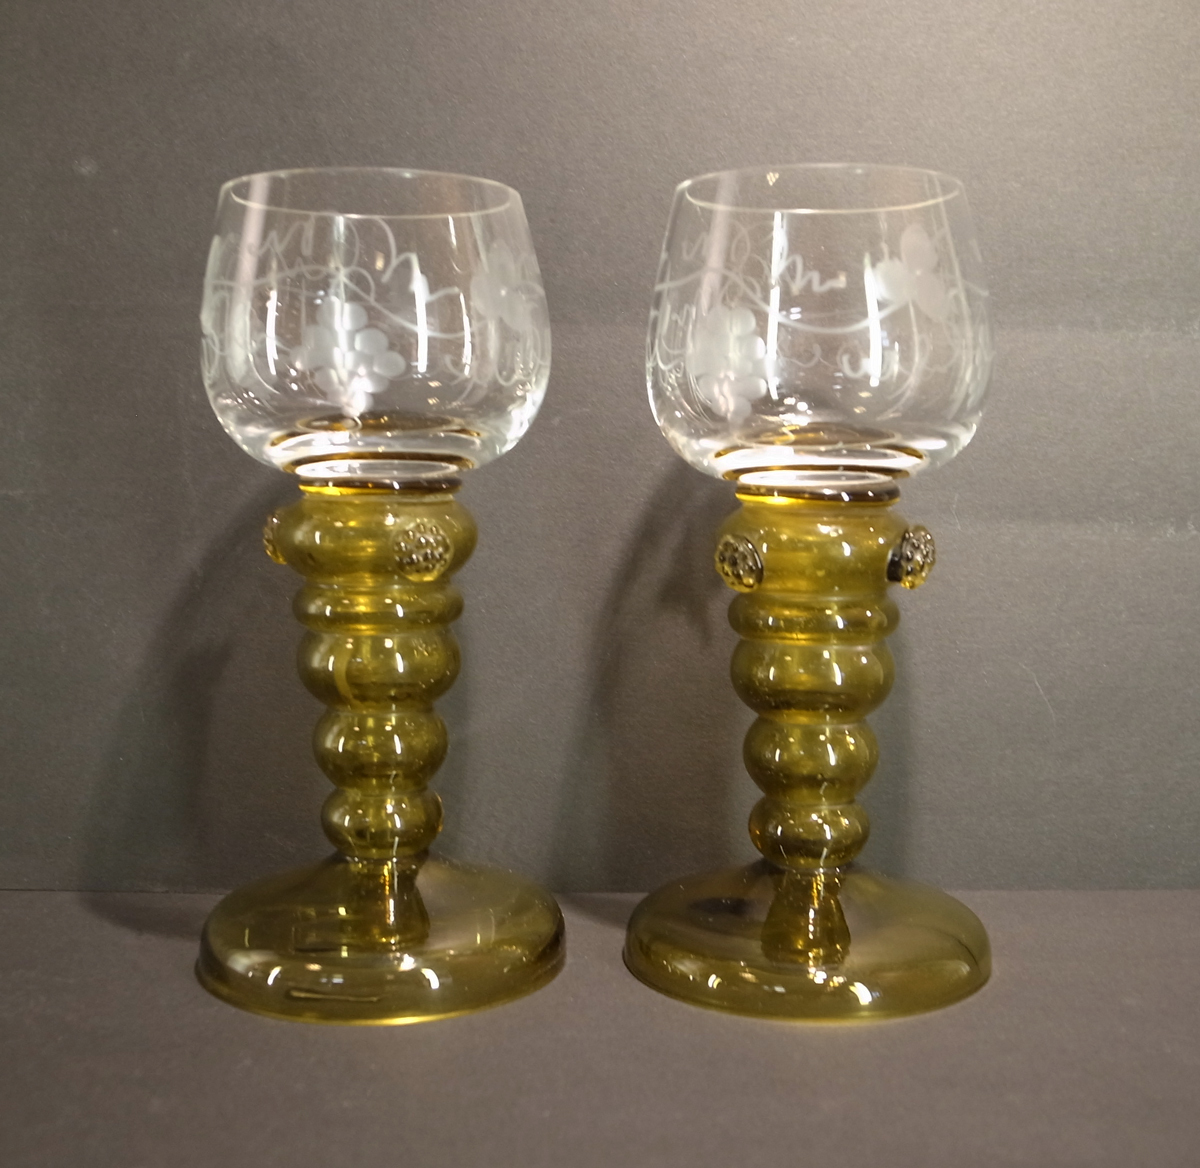 ドイツ伝統のワイングラス アンテーク 19世紀 レーマーグラス 2客セット 葡萄彫刻 即決